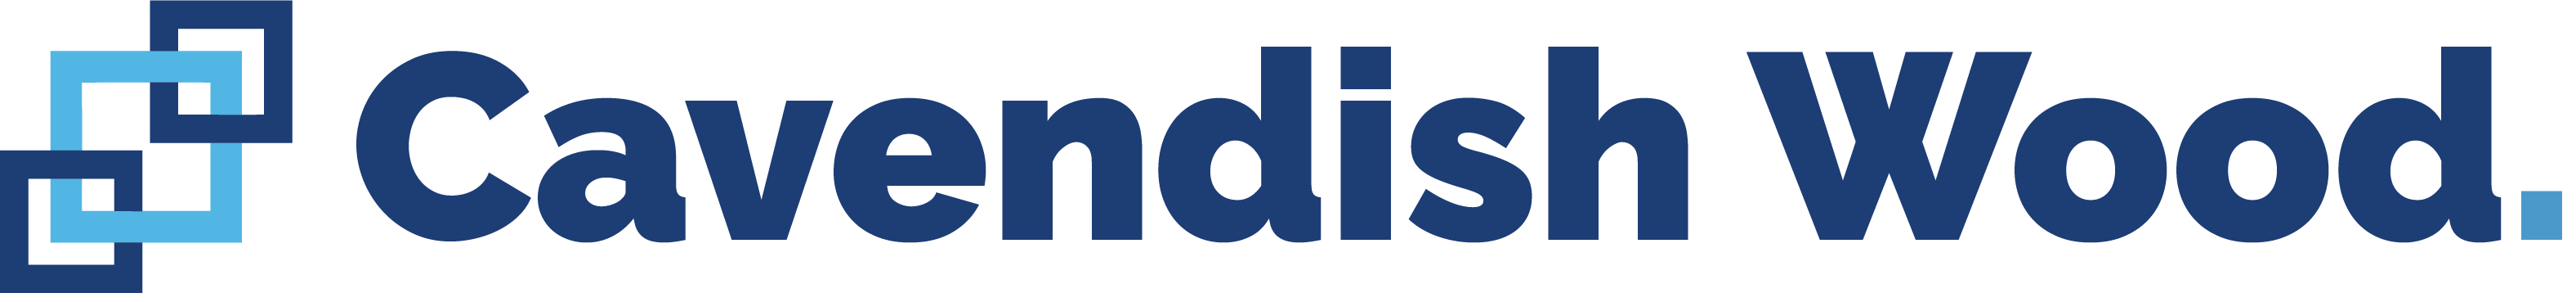 Cavendish Wood Logo NEW